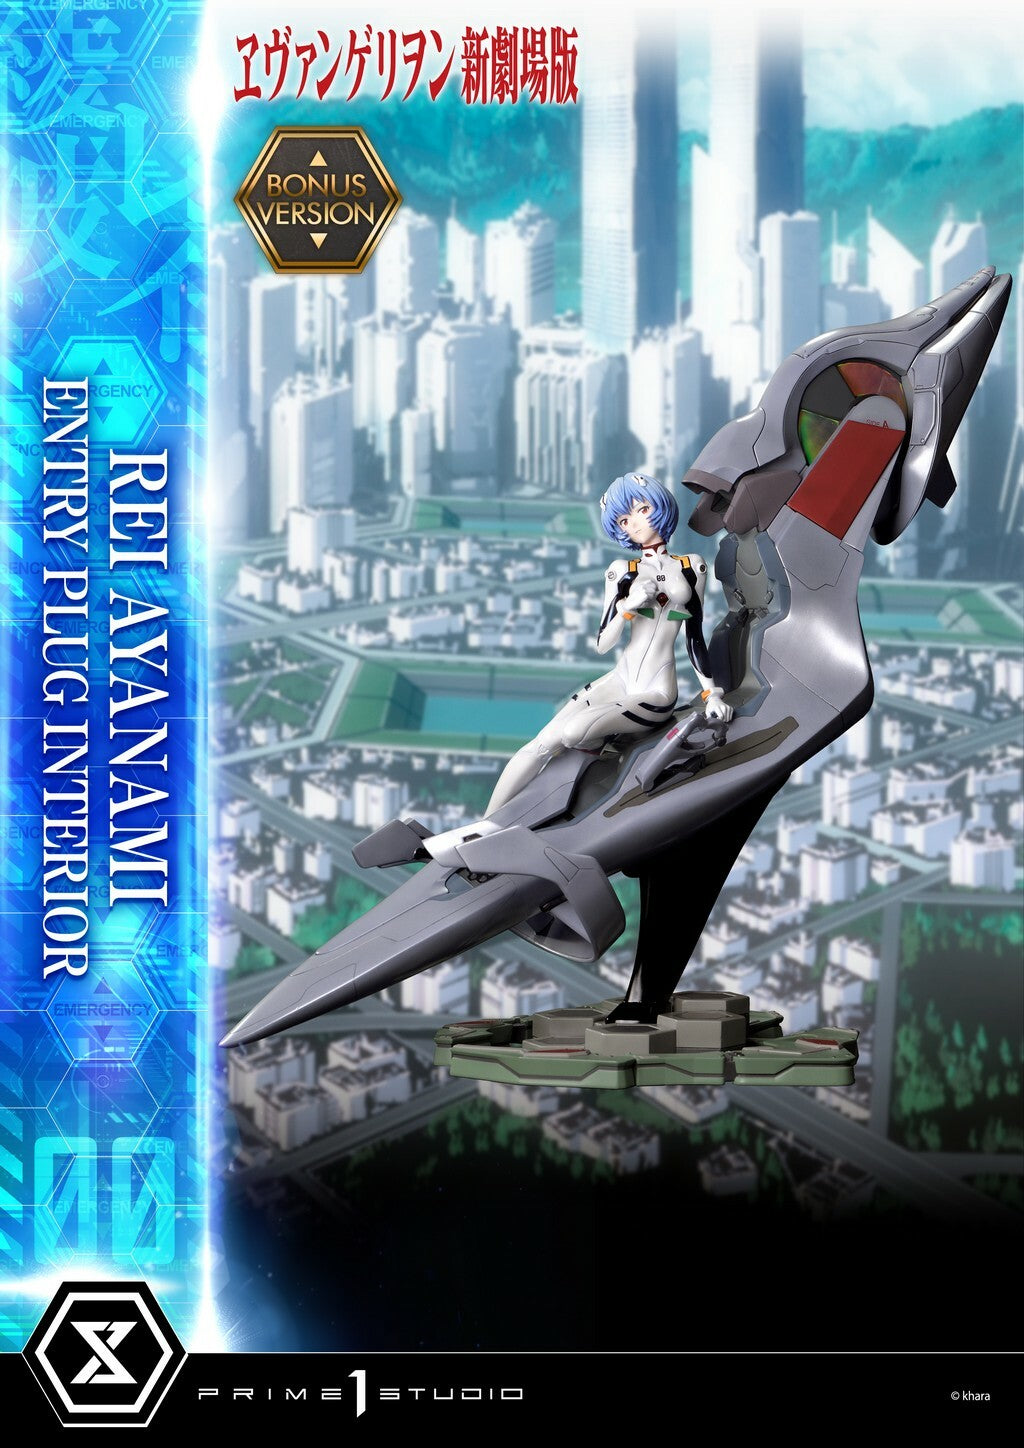  Rebuild of Evangelion: Rei Ayanami Bonus Version 1:4 Scale Statue  4580708041698